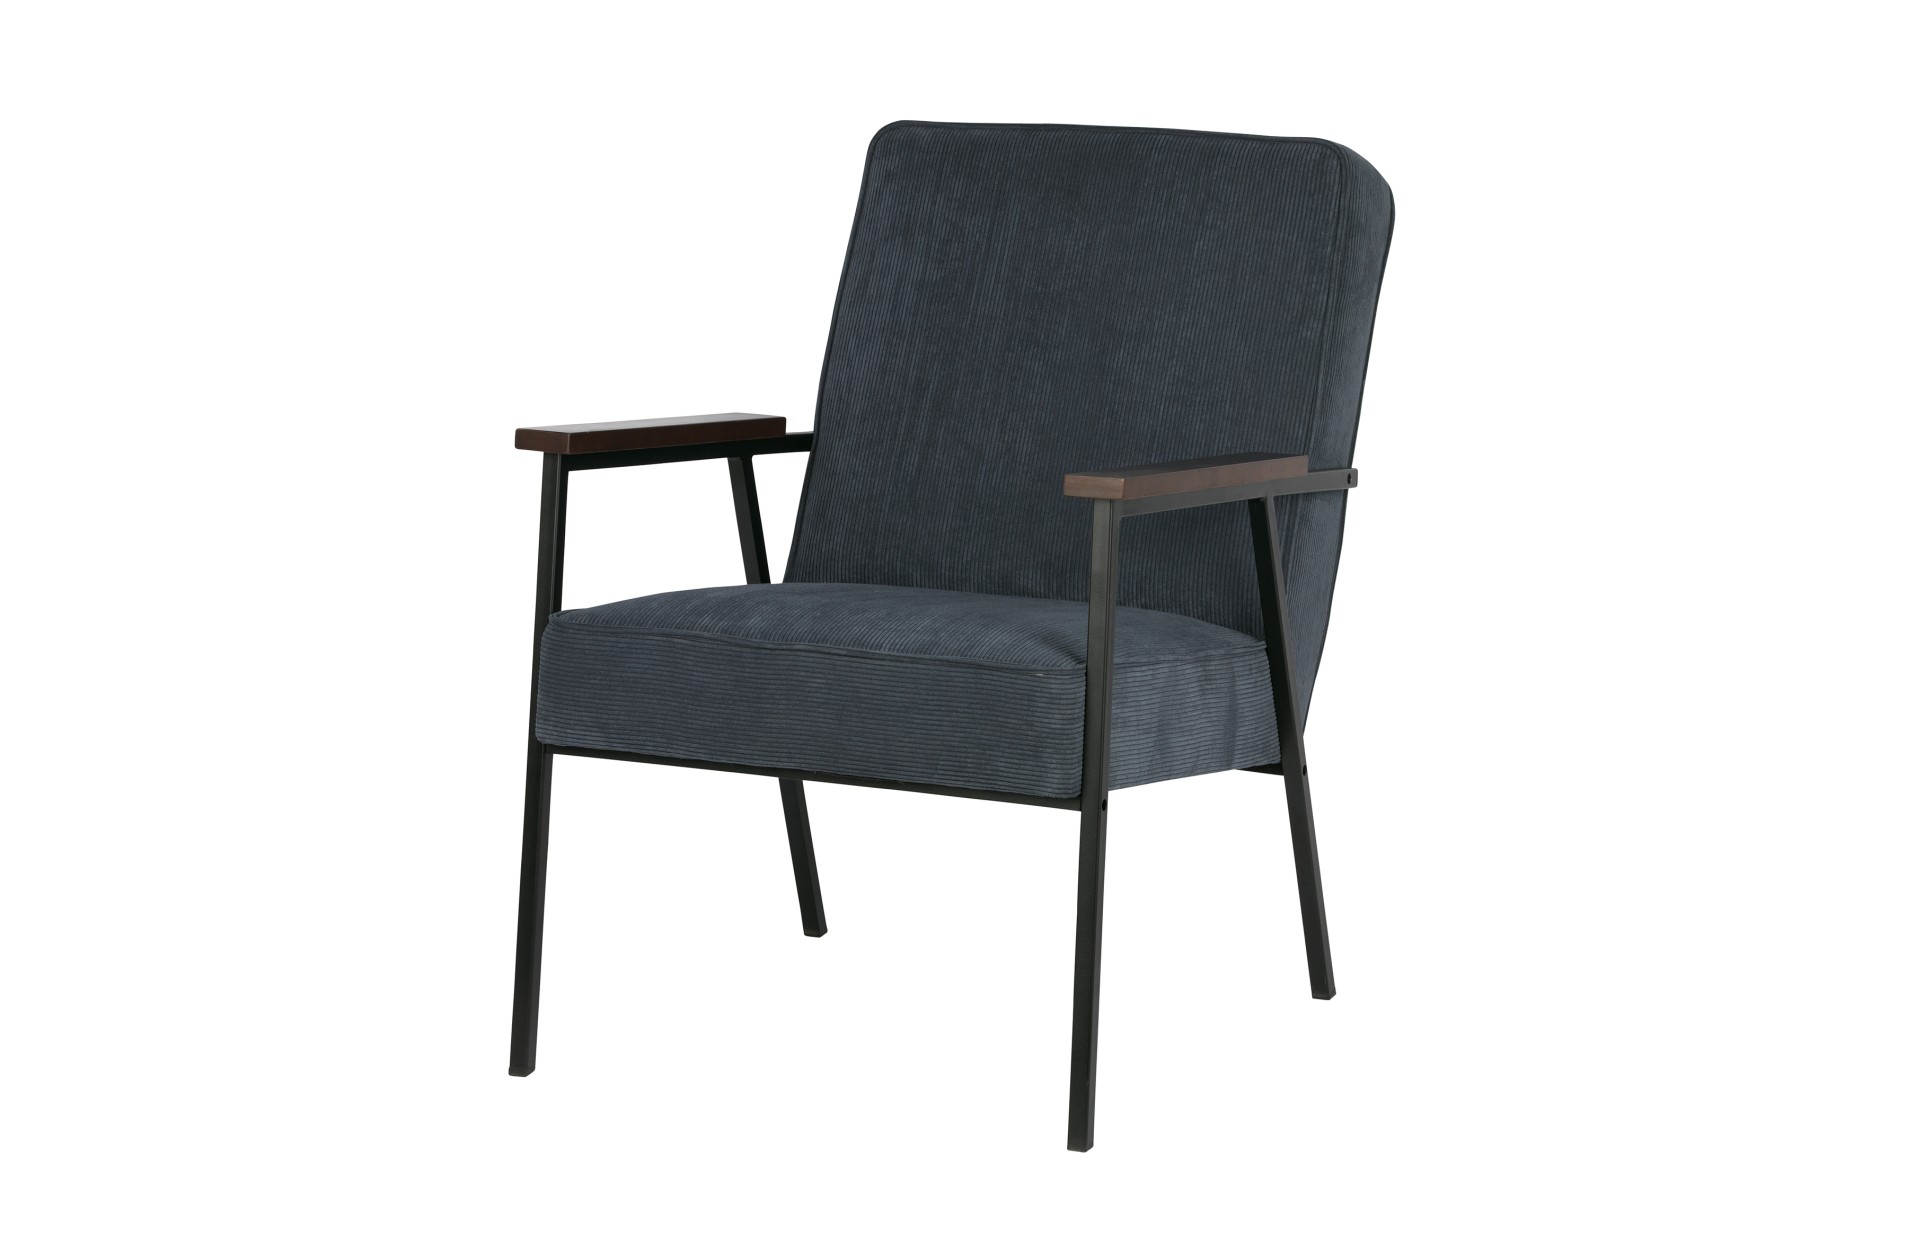 Der Stilvolle Sessel Sally überzeugt mit seinem skandinavisch aber auch modernen Design. Gefertigt wurde der Sessel aus Metall und hat einen Stoffbezug in Cord-Optik. Die zwei Armlehnen sorgen für einen bequemes Sitzen. Der Sessel hat die Farbe Stahlblau.